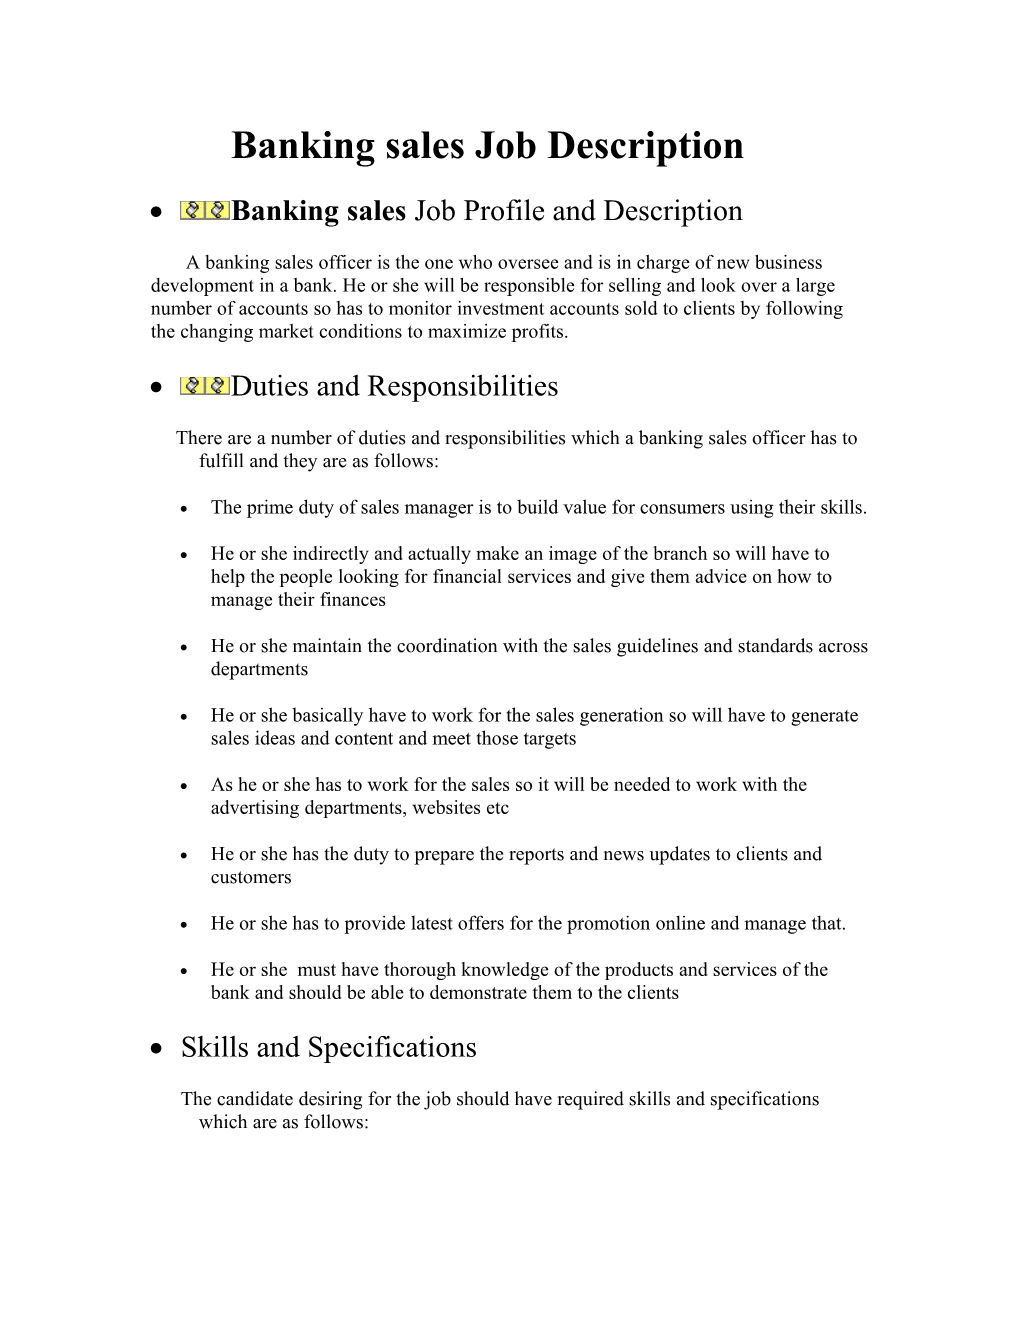 Banking Sales Job Description